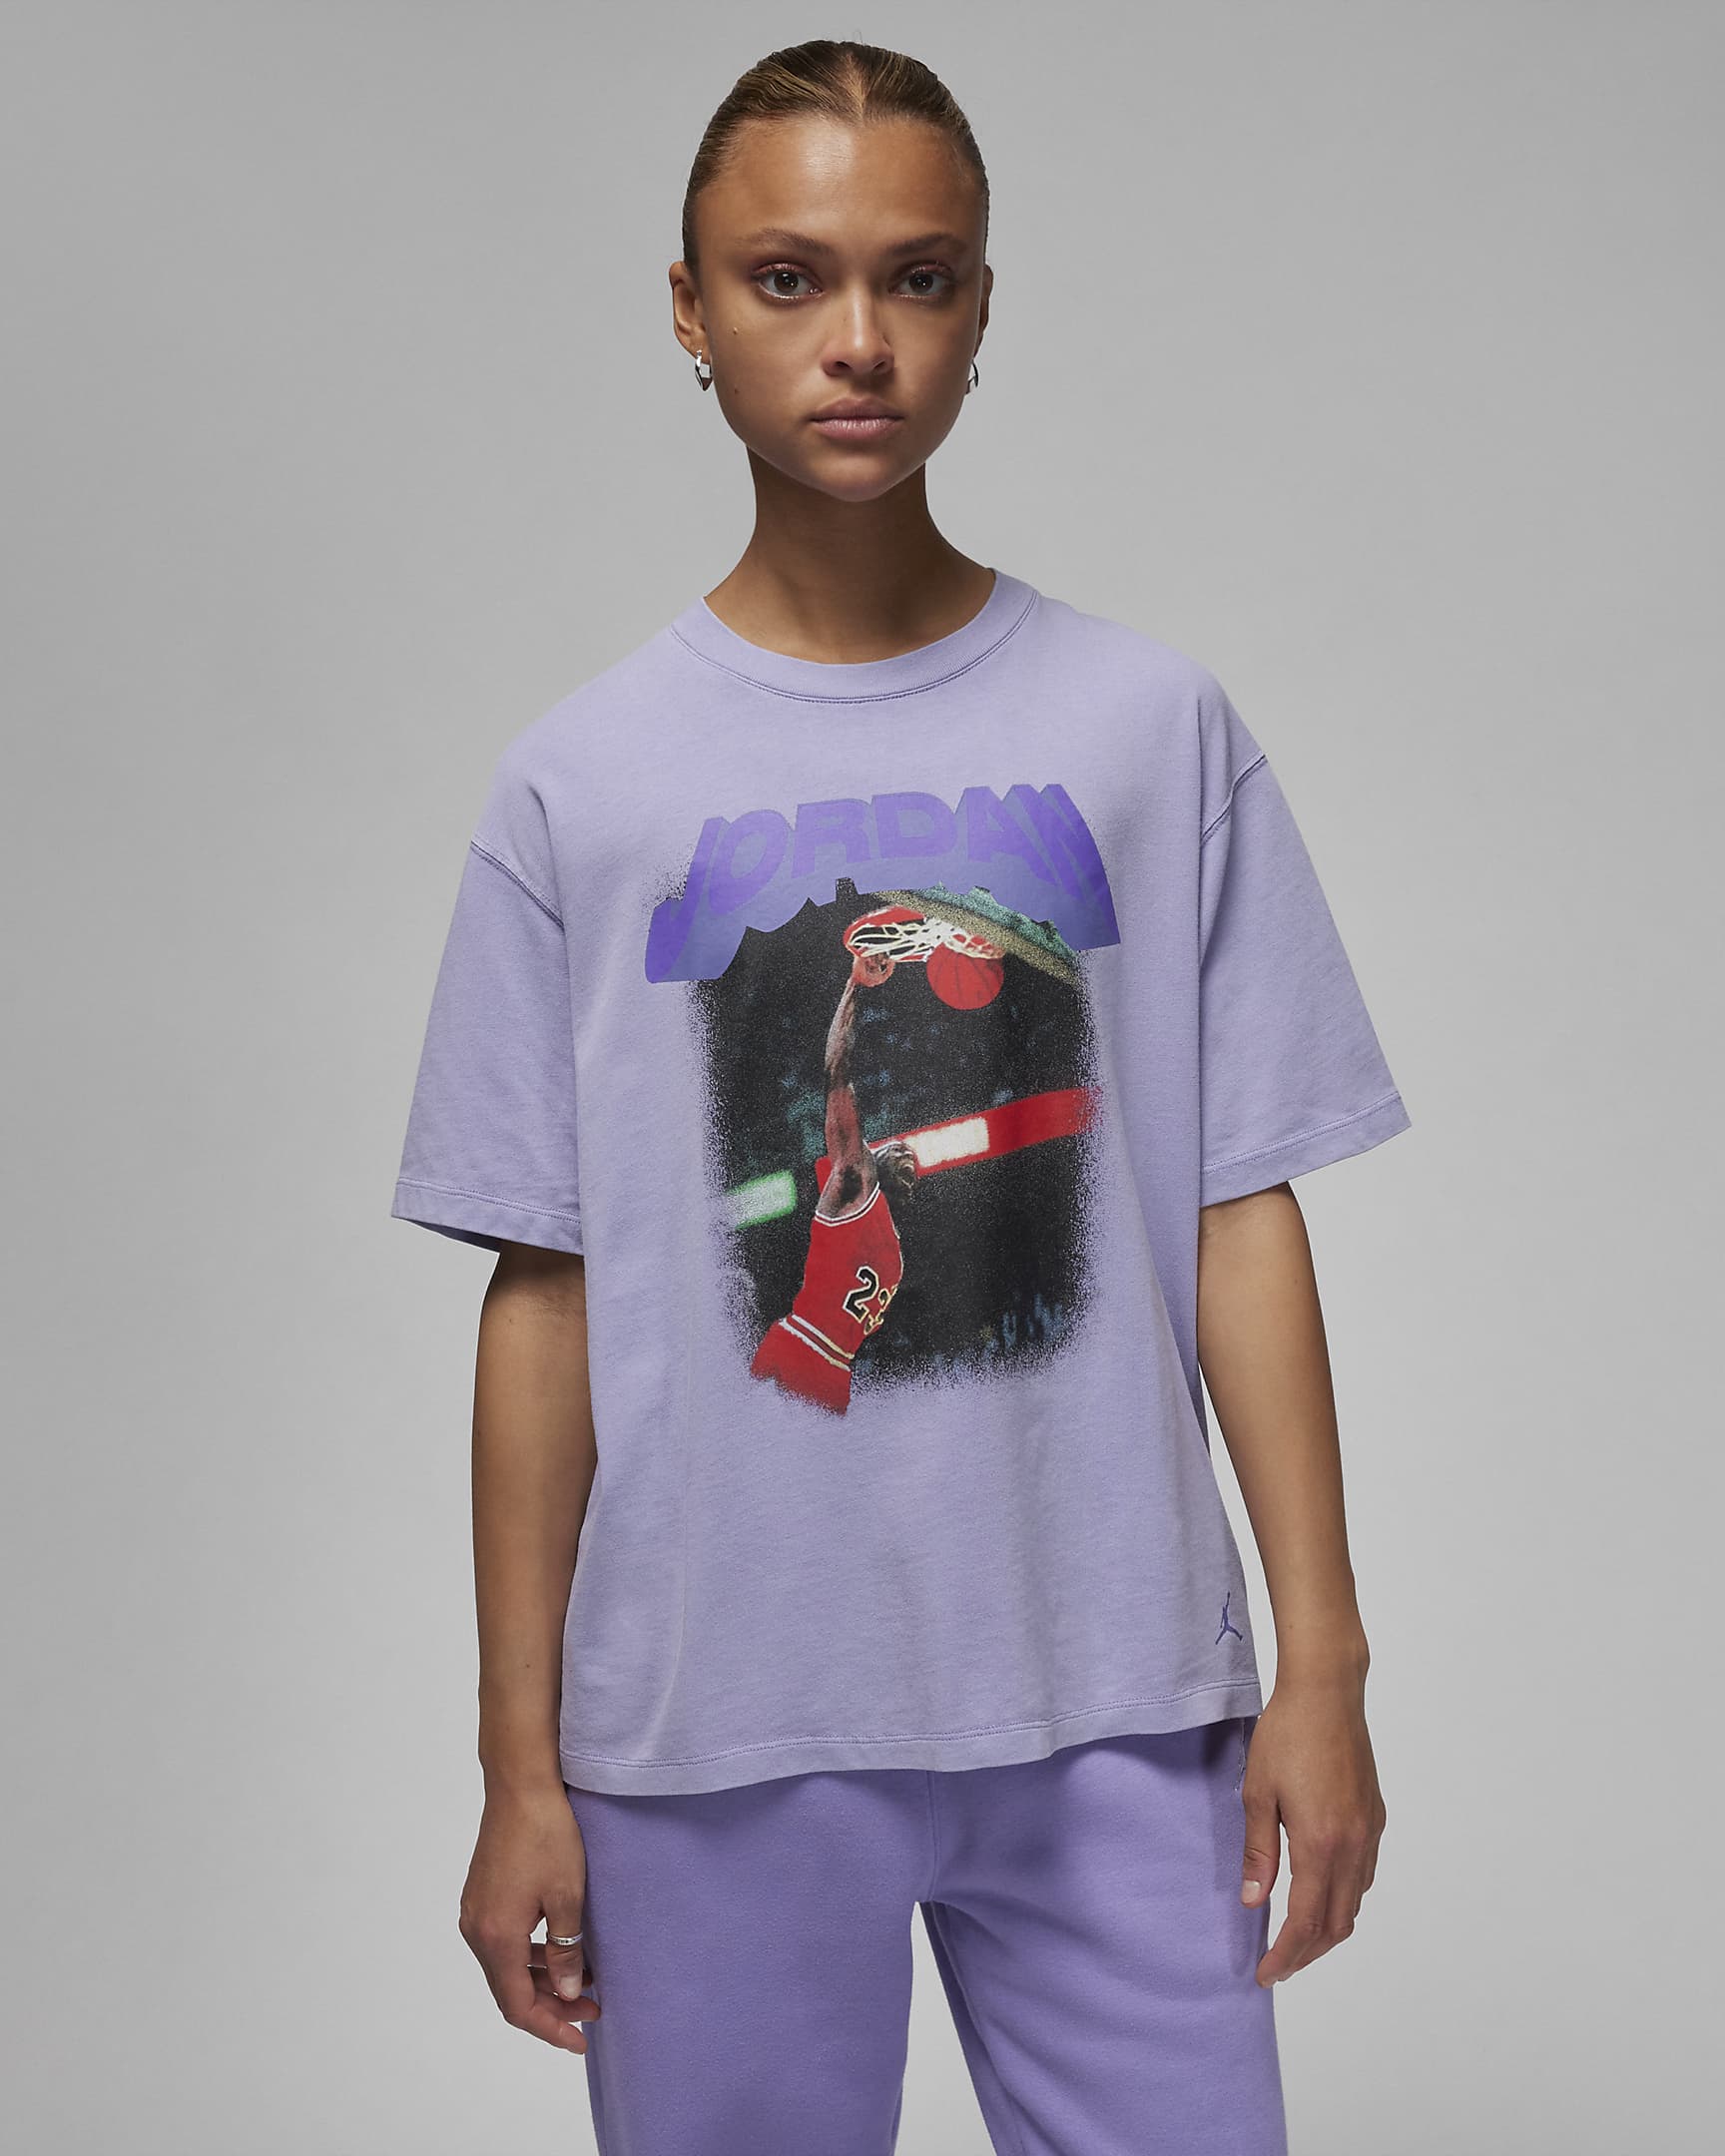 Jordan (Her)itage Women's Graphic T-Shirt. Nike UK